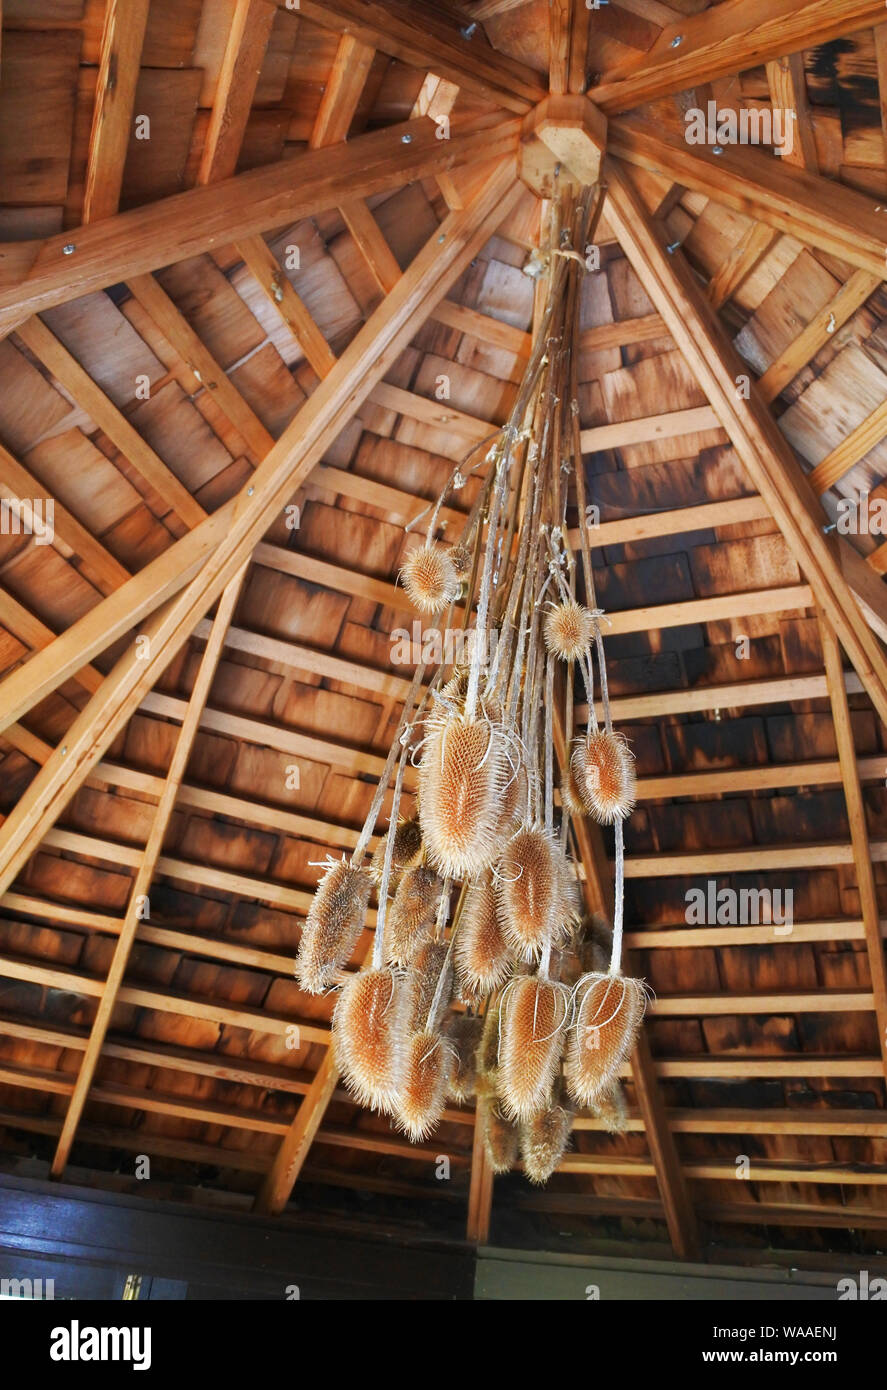 Haufen trocknen teasels Kopfüber von einem sheddach hängend - Johannes Gollop Stockfoto